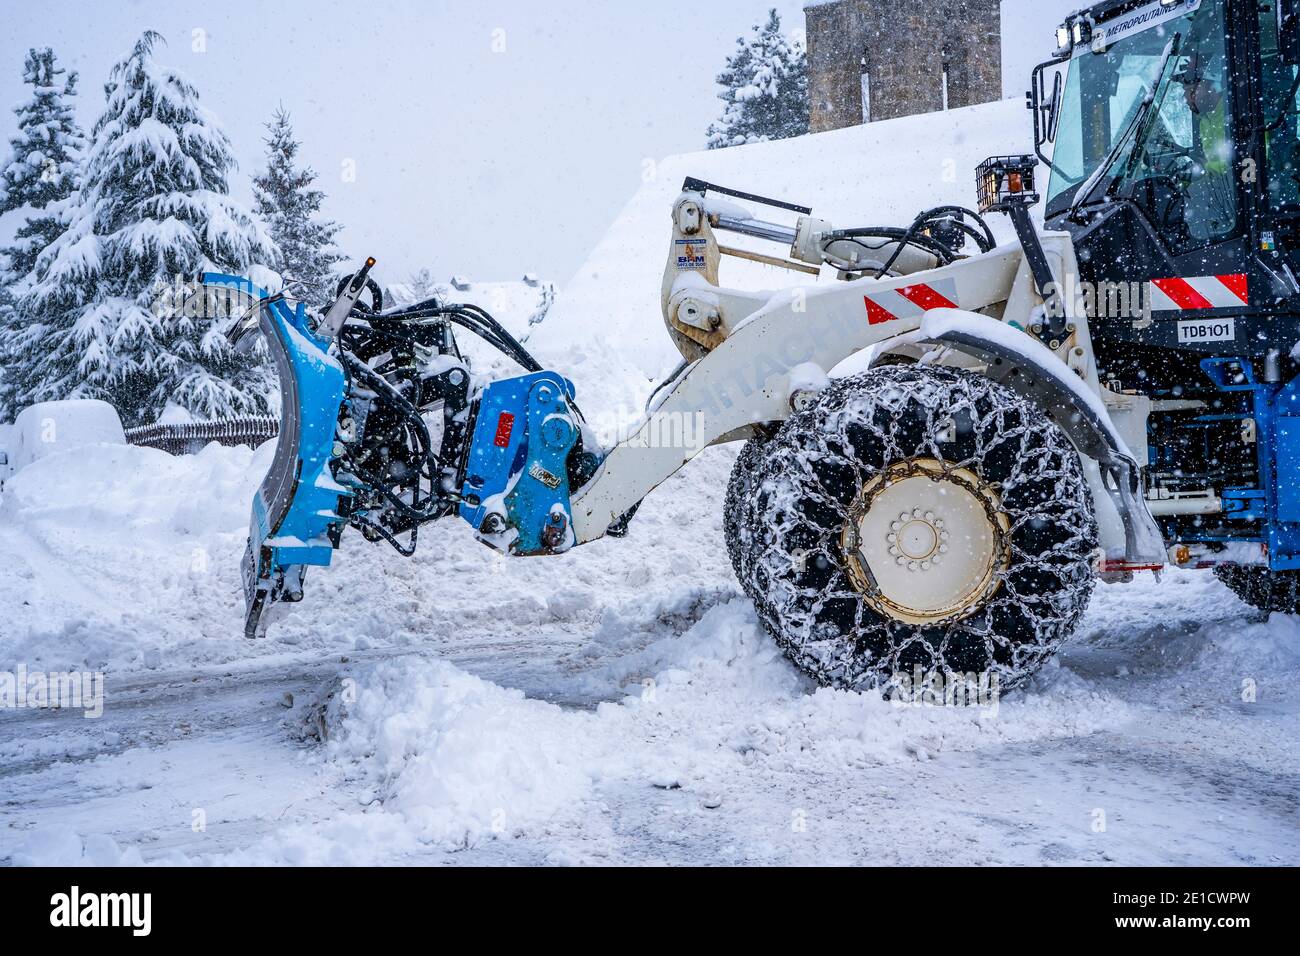 Auron, Francia 01.01.2021 trattore che rimuove la neve dalle grandi rive della neve vicino alla strada su una stazione sciistica nelle Alpi francesi. Foto di alta qualità Foto Stock